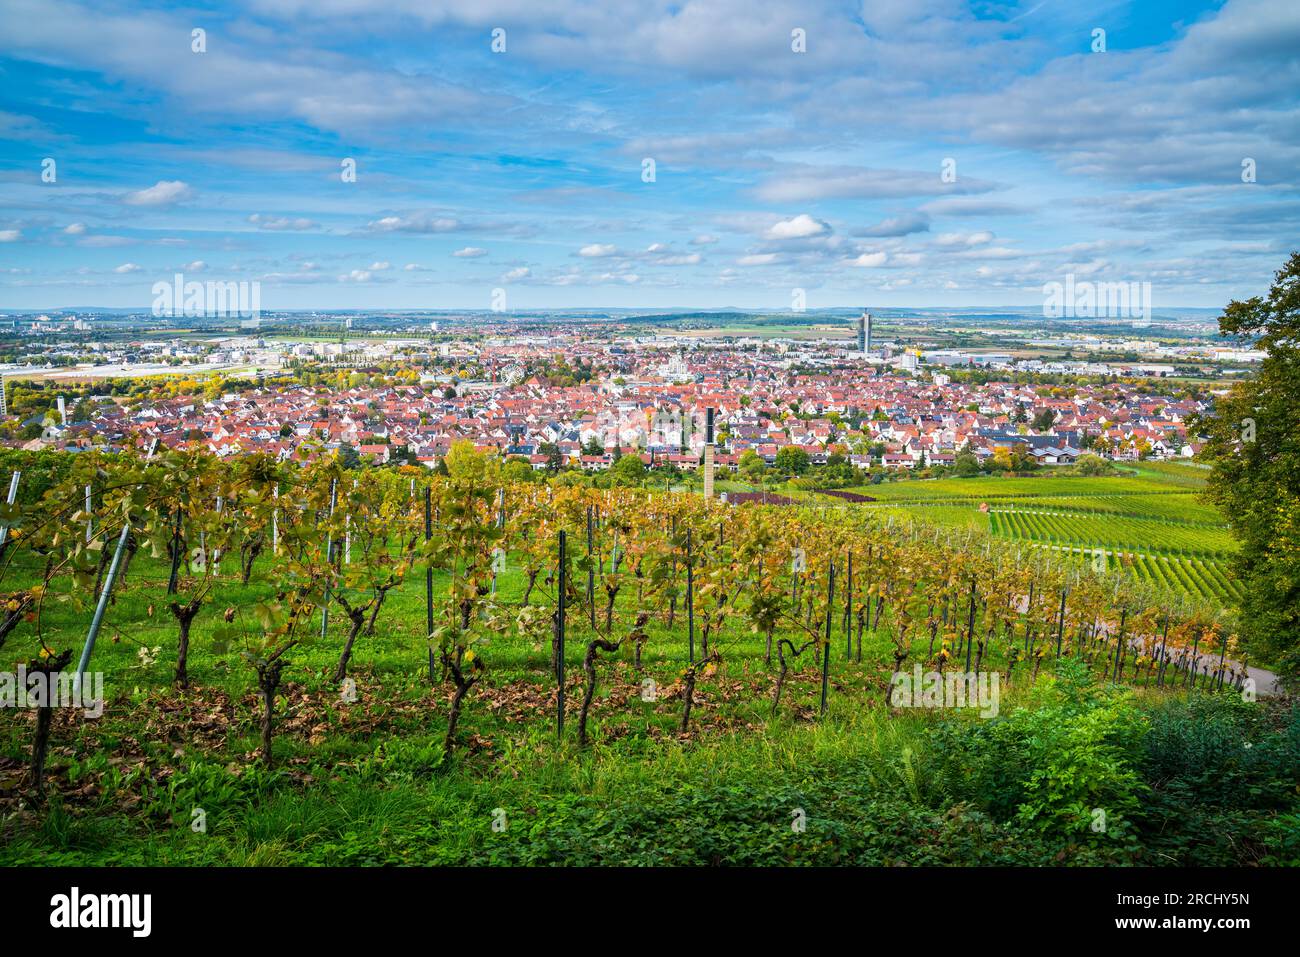 Alemania, horizonte de la ciudad de Fellbach vista panorámica del viñedo temporada de otoño por encima de los tejados casas torre en el estado de ánimo de la puesta del sol con el cielo azul y el sol Foto de stock